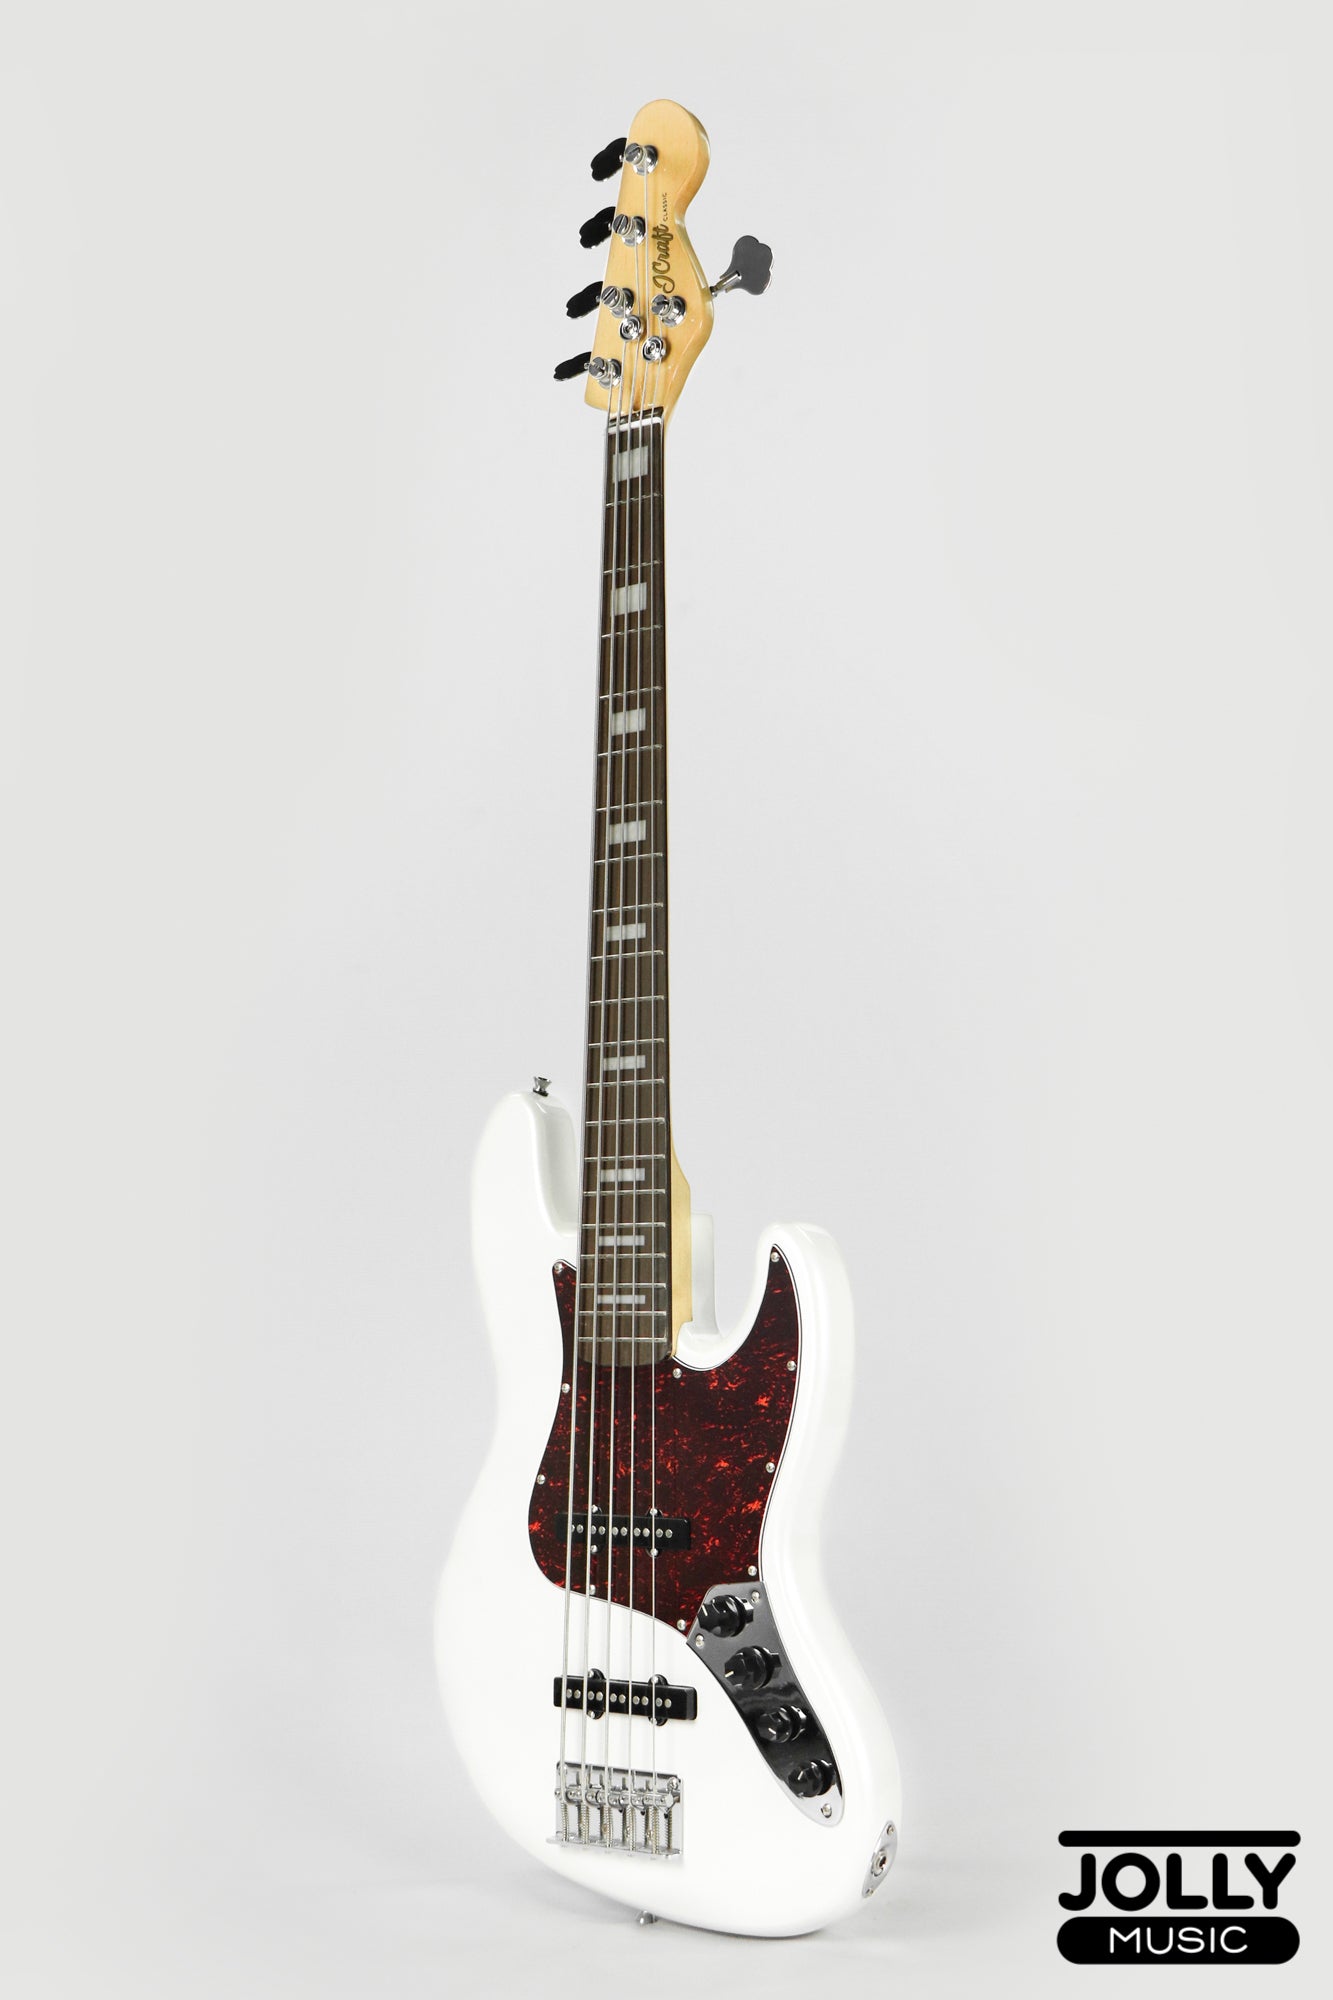 JCraft JB-2A J-Offset 5-String Bass Guitar - White